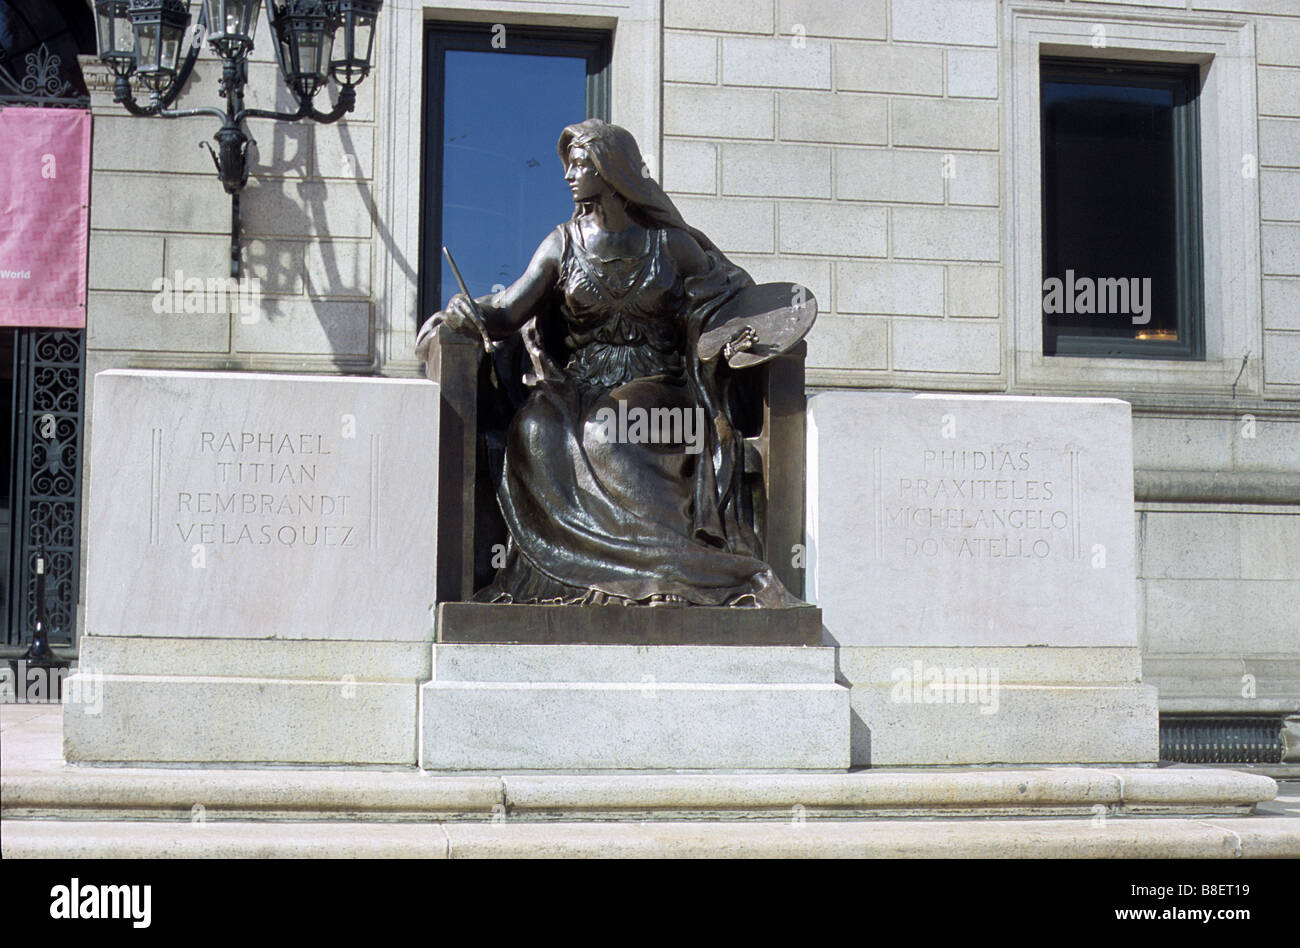 Bronze sculpture representing Art, outside the Boston Public Library, Boston, Mass. Stock Photo